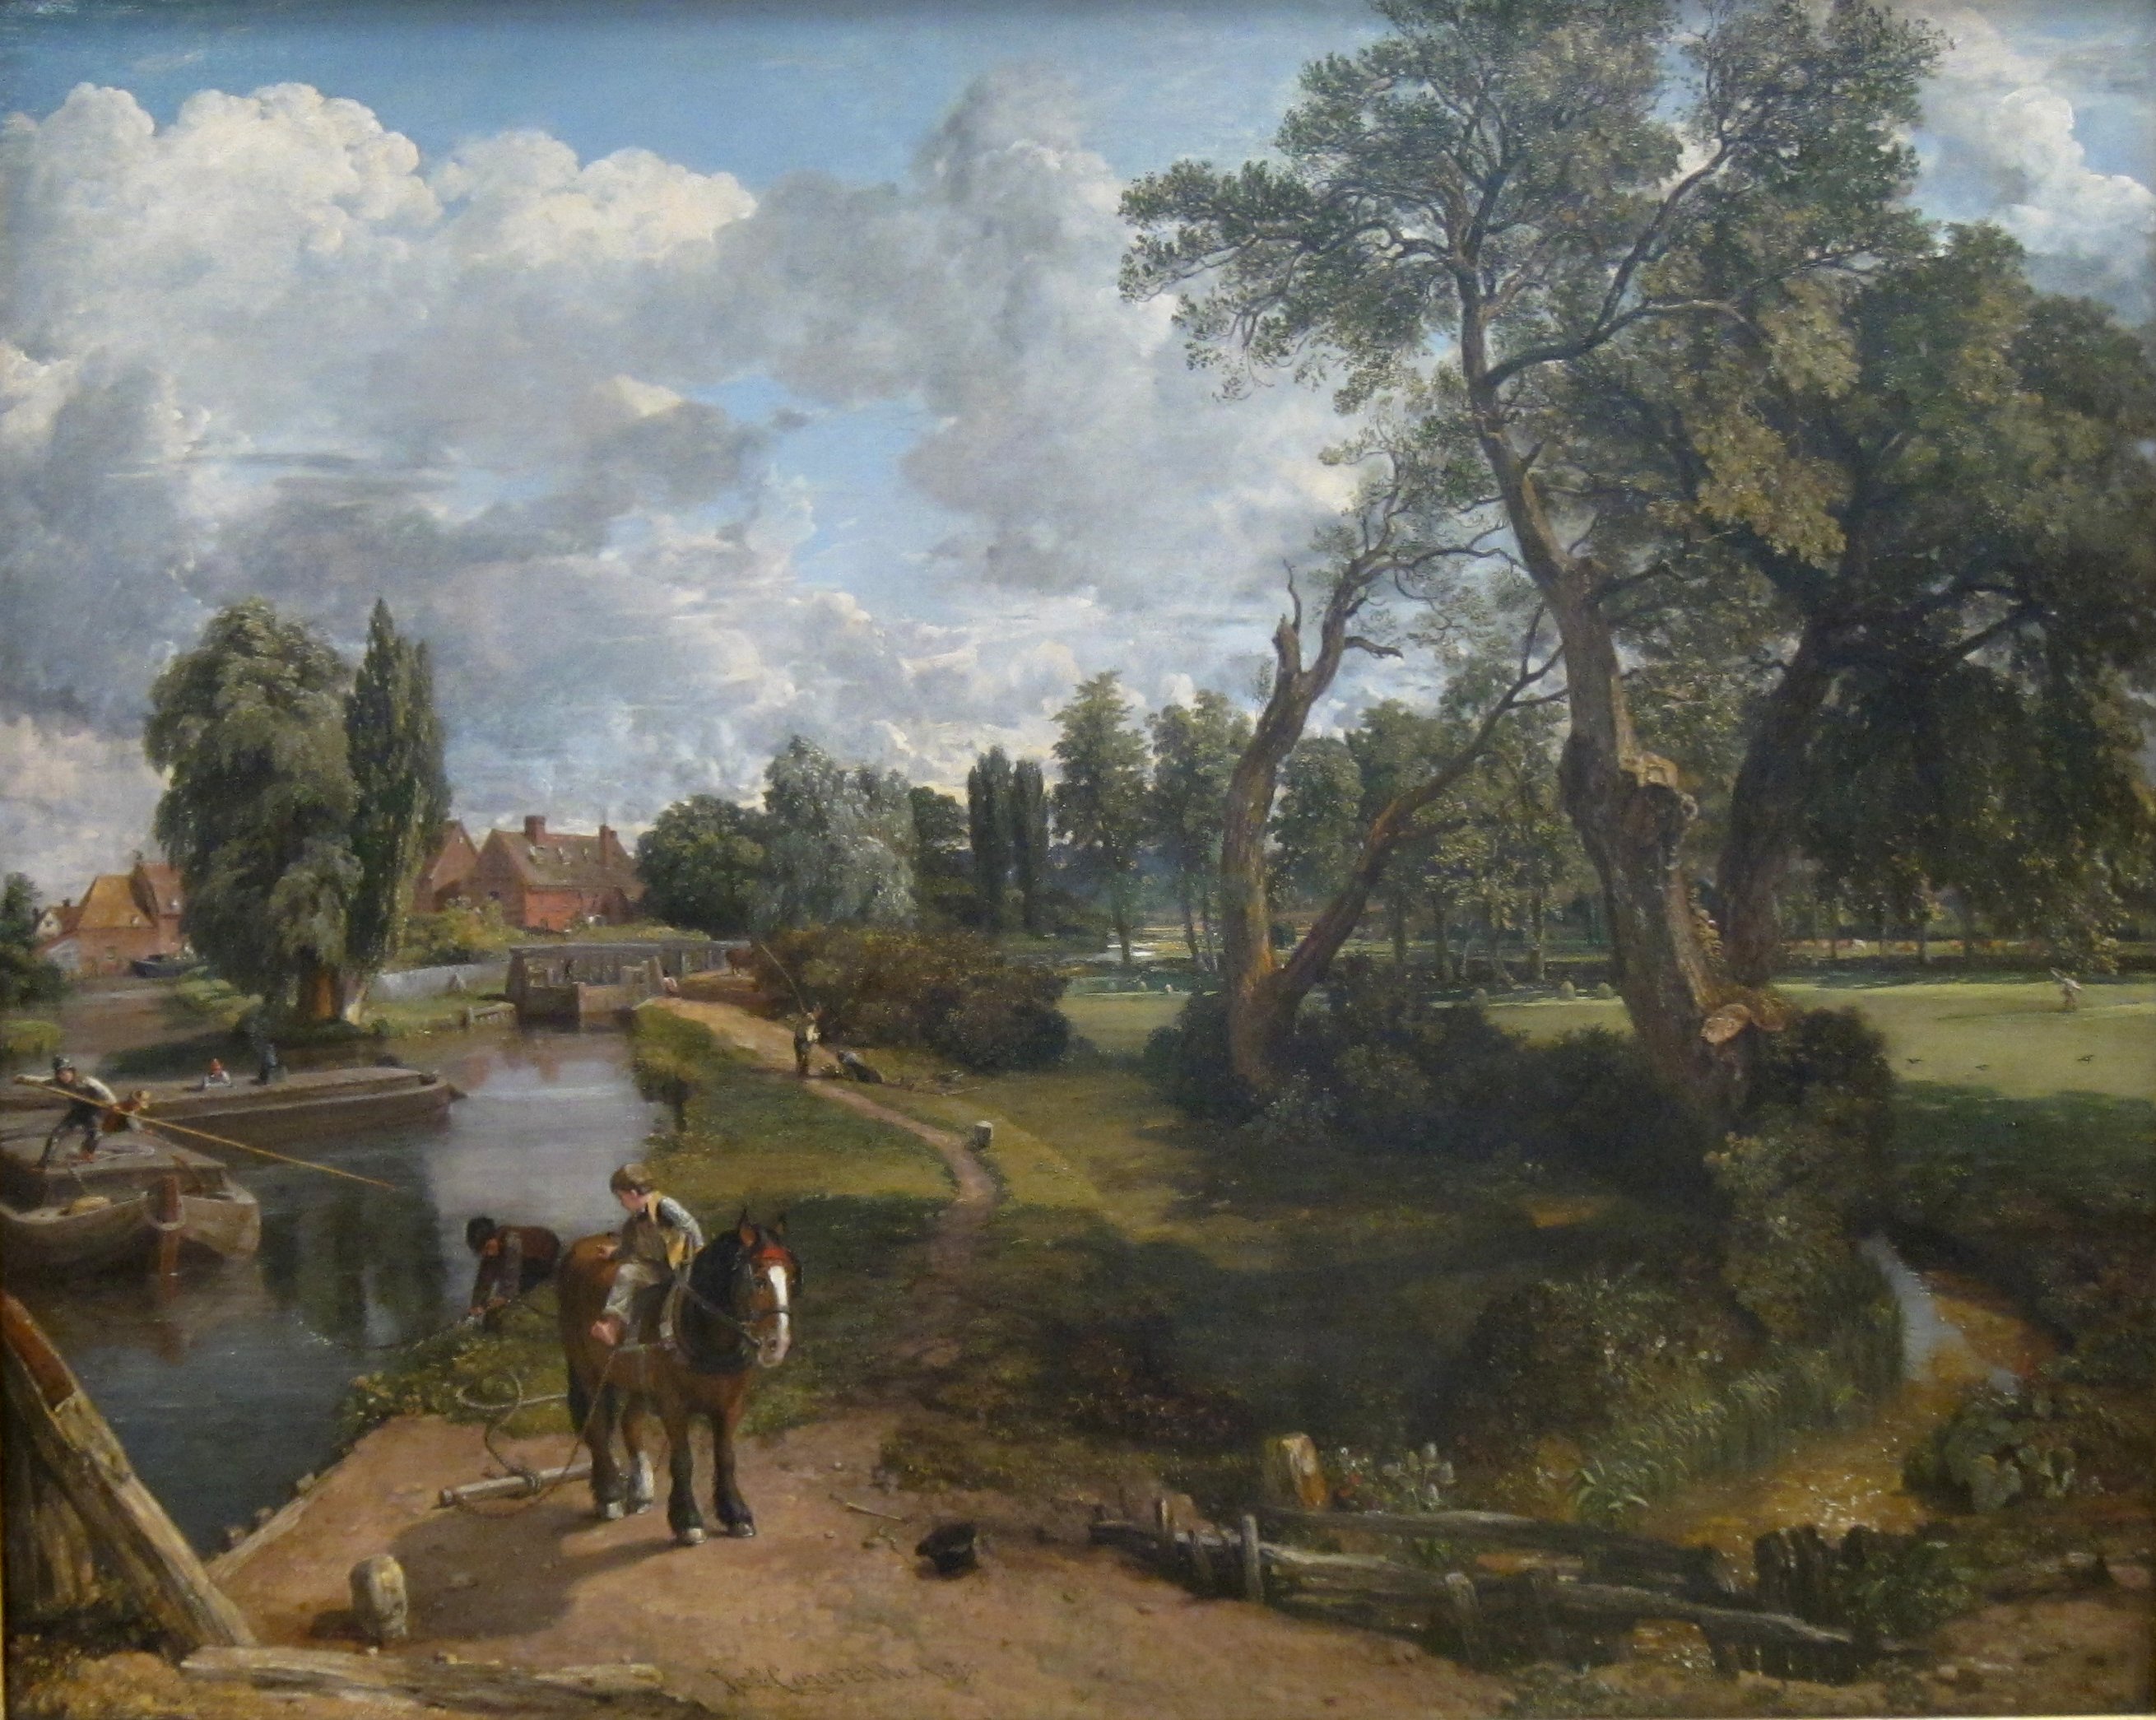 Flatford Mill ('Szene an einem schiffbaren Fluss') by John Constable - 1816-17 - 101.6 x 127 cm Tate Britain